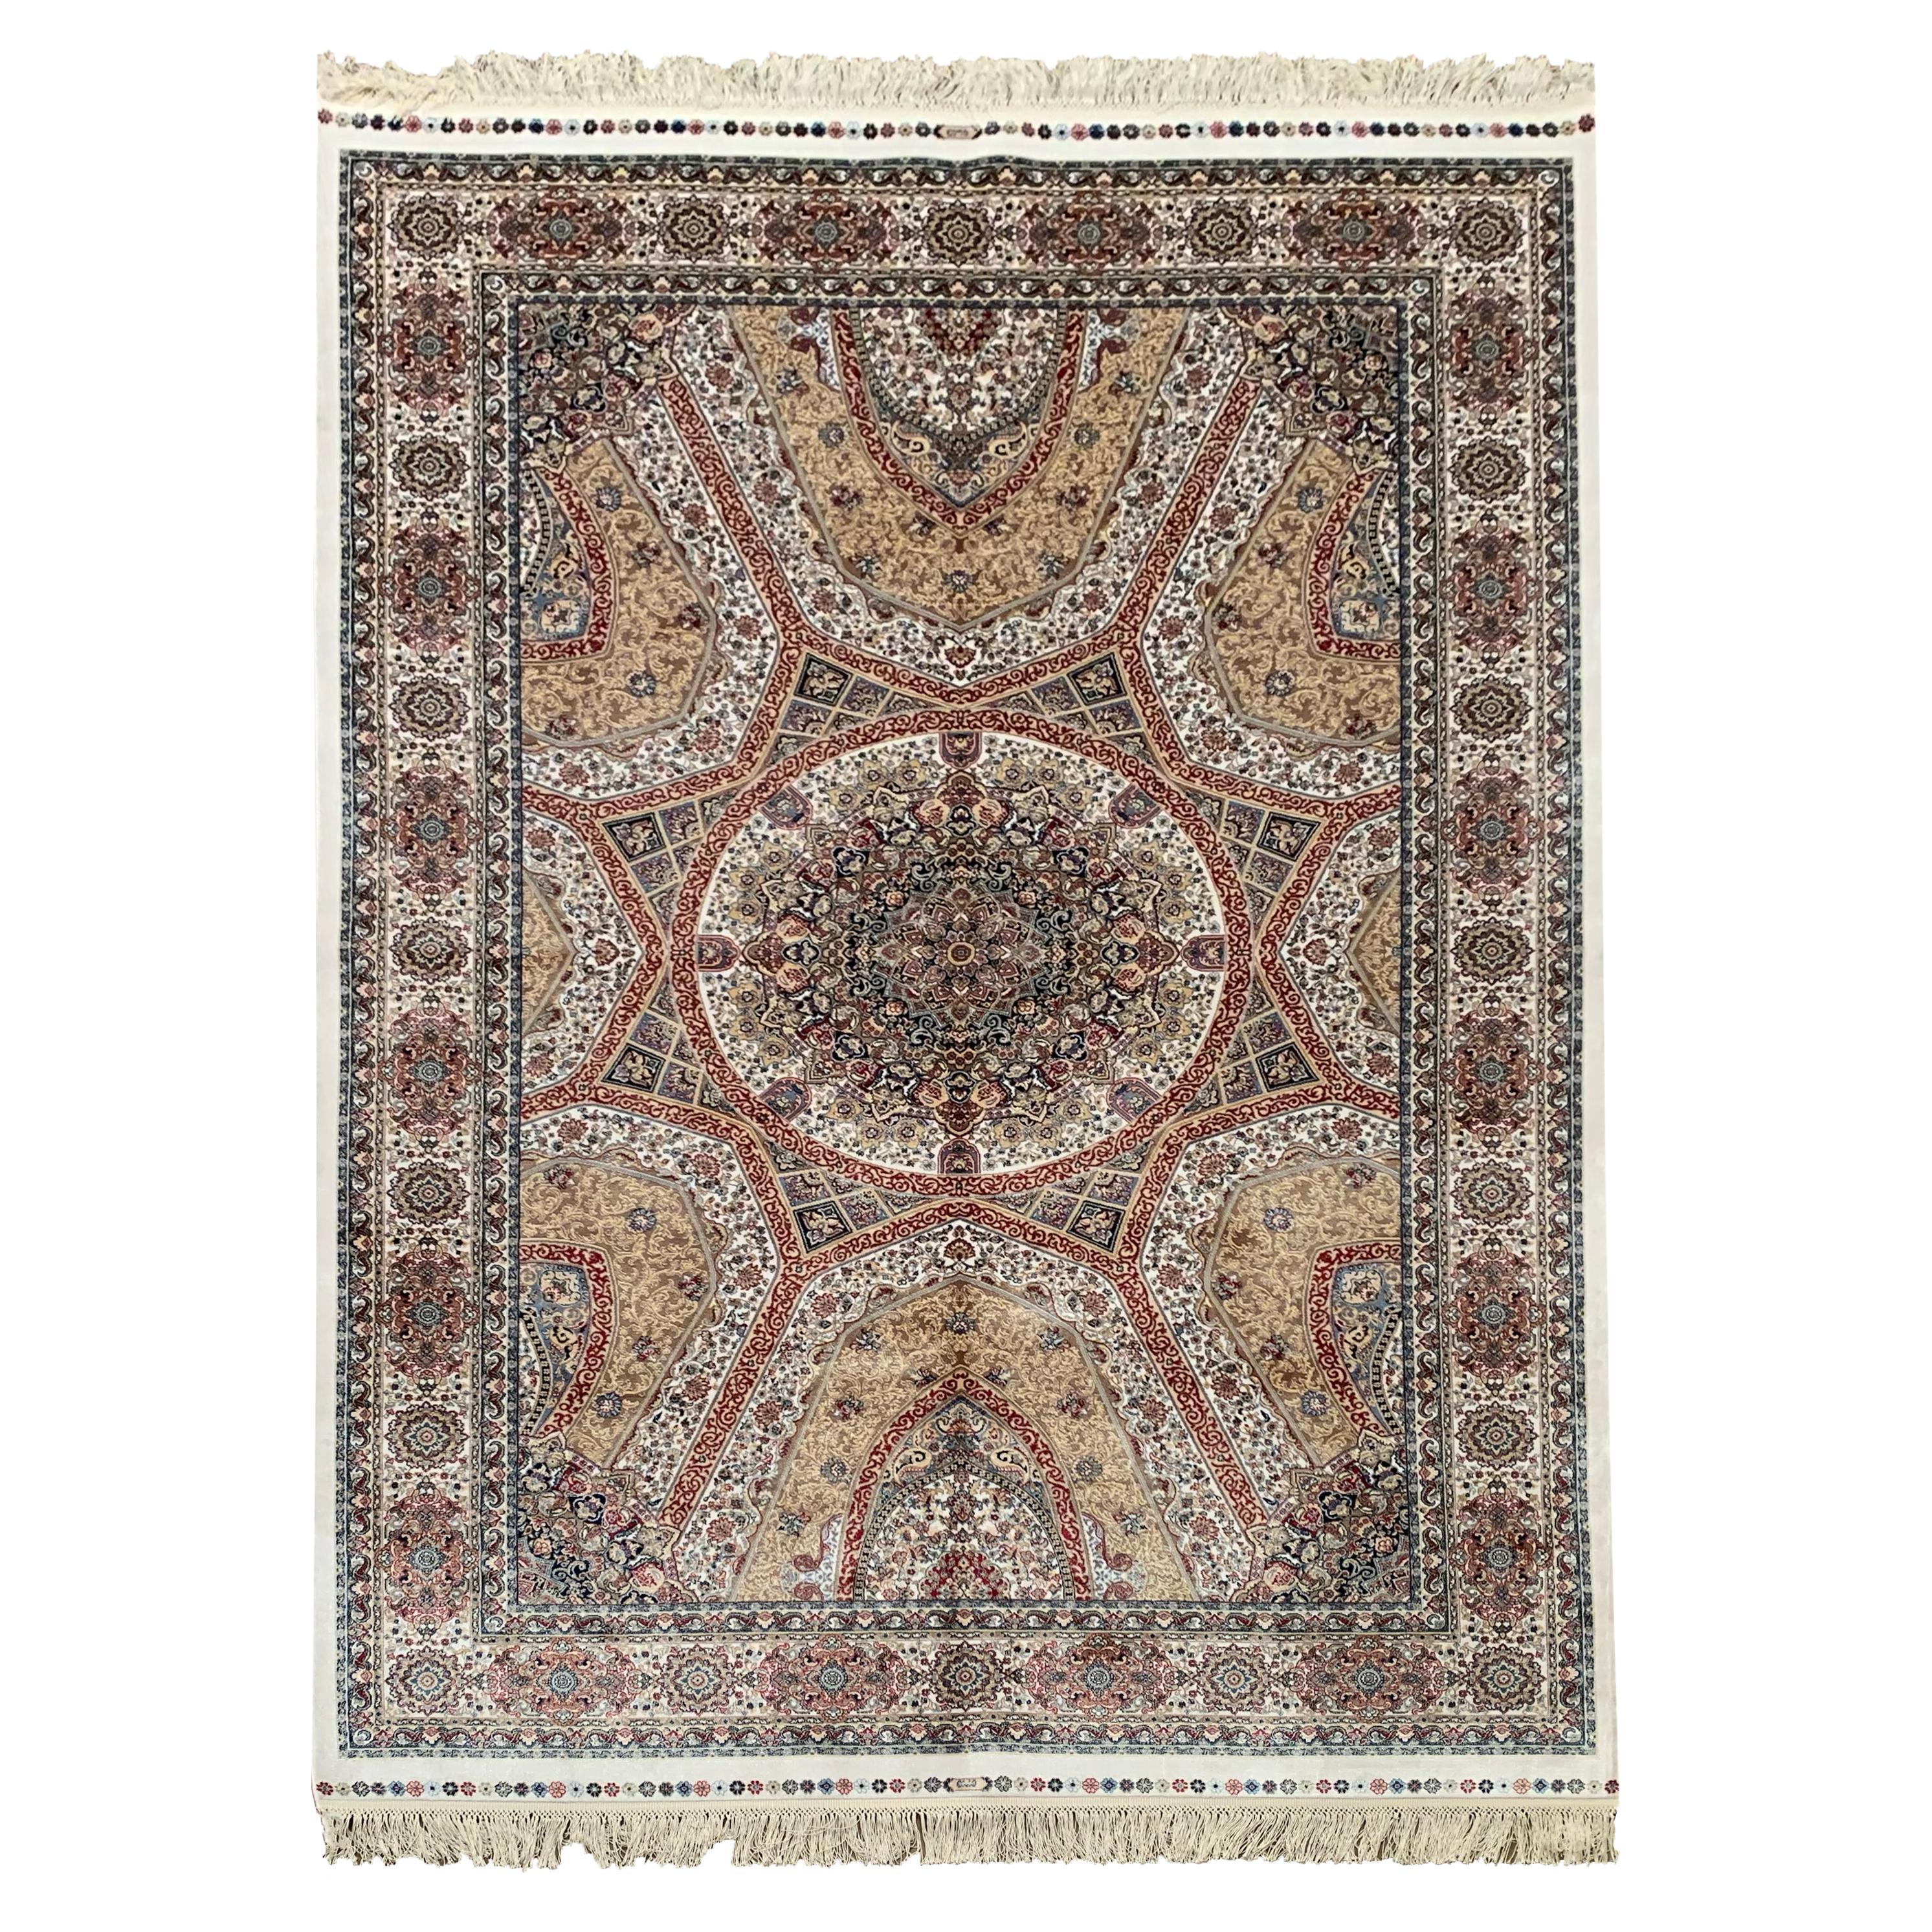 Türkischer Teppich aus reiner Seide, elfenbeinfarben, 1000 KPSI